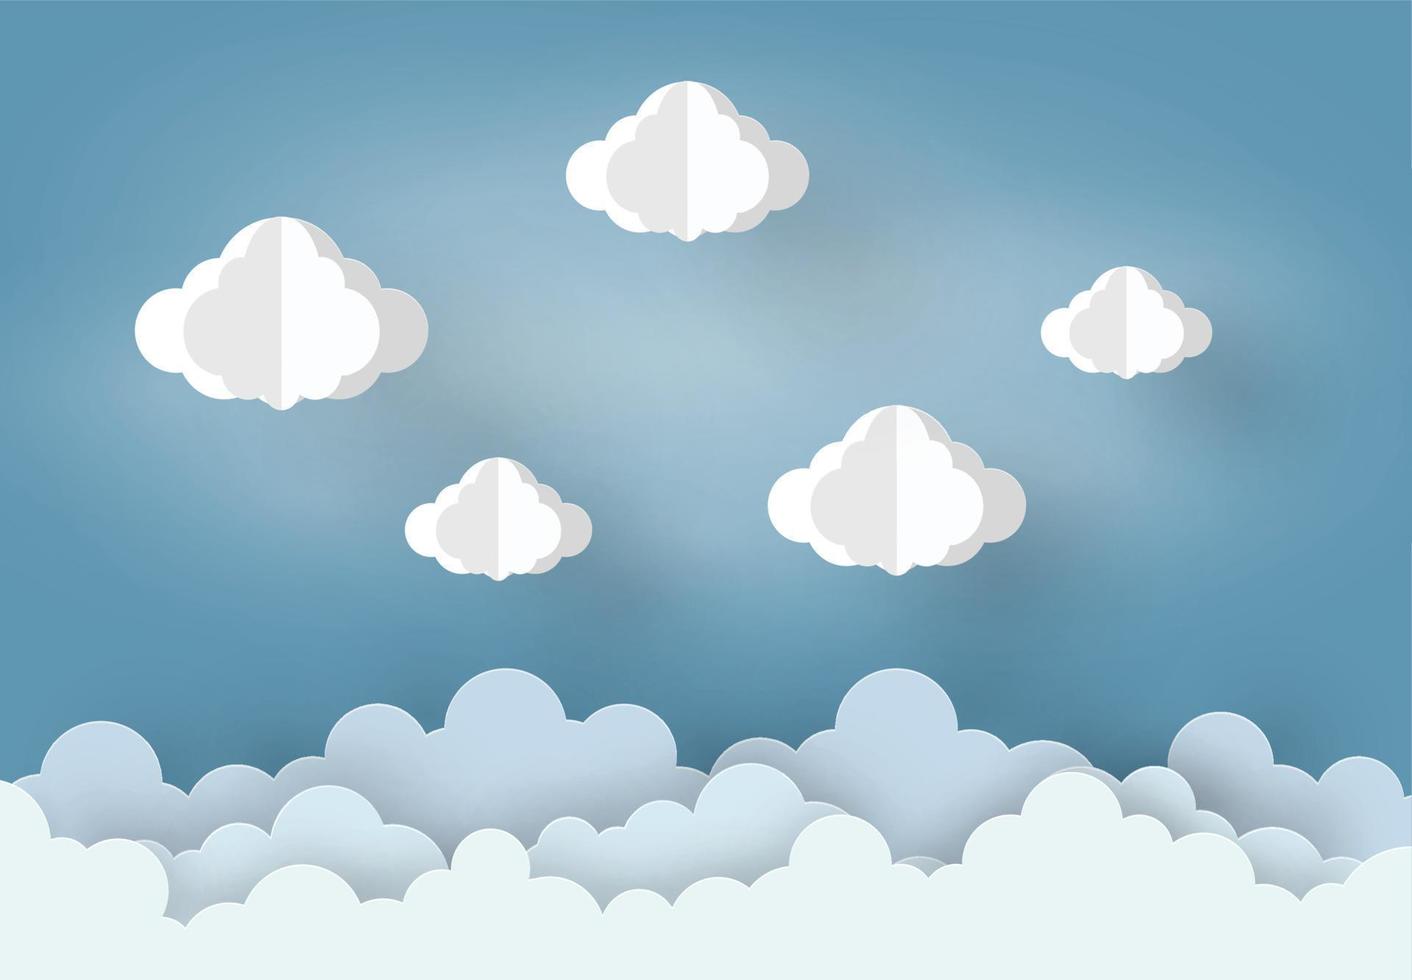 stile mobile di design di arte della carta il concetto è stagione delle piogge, nuvola e su sfondo blu cielo, illustrazione dell'elemento di design vettoriale